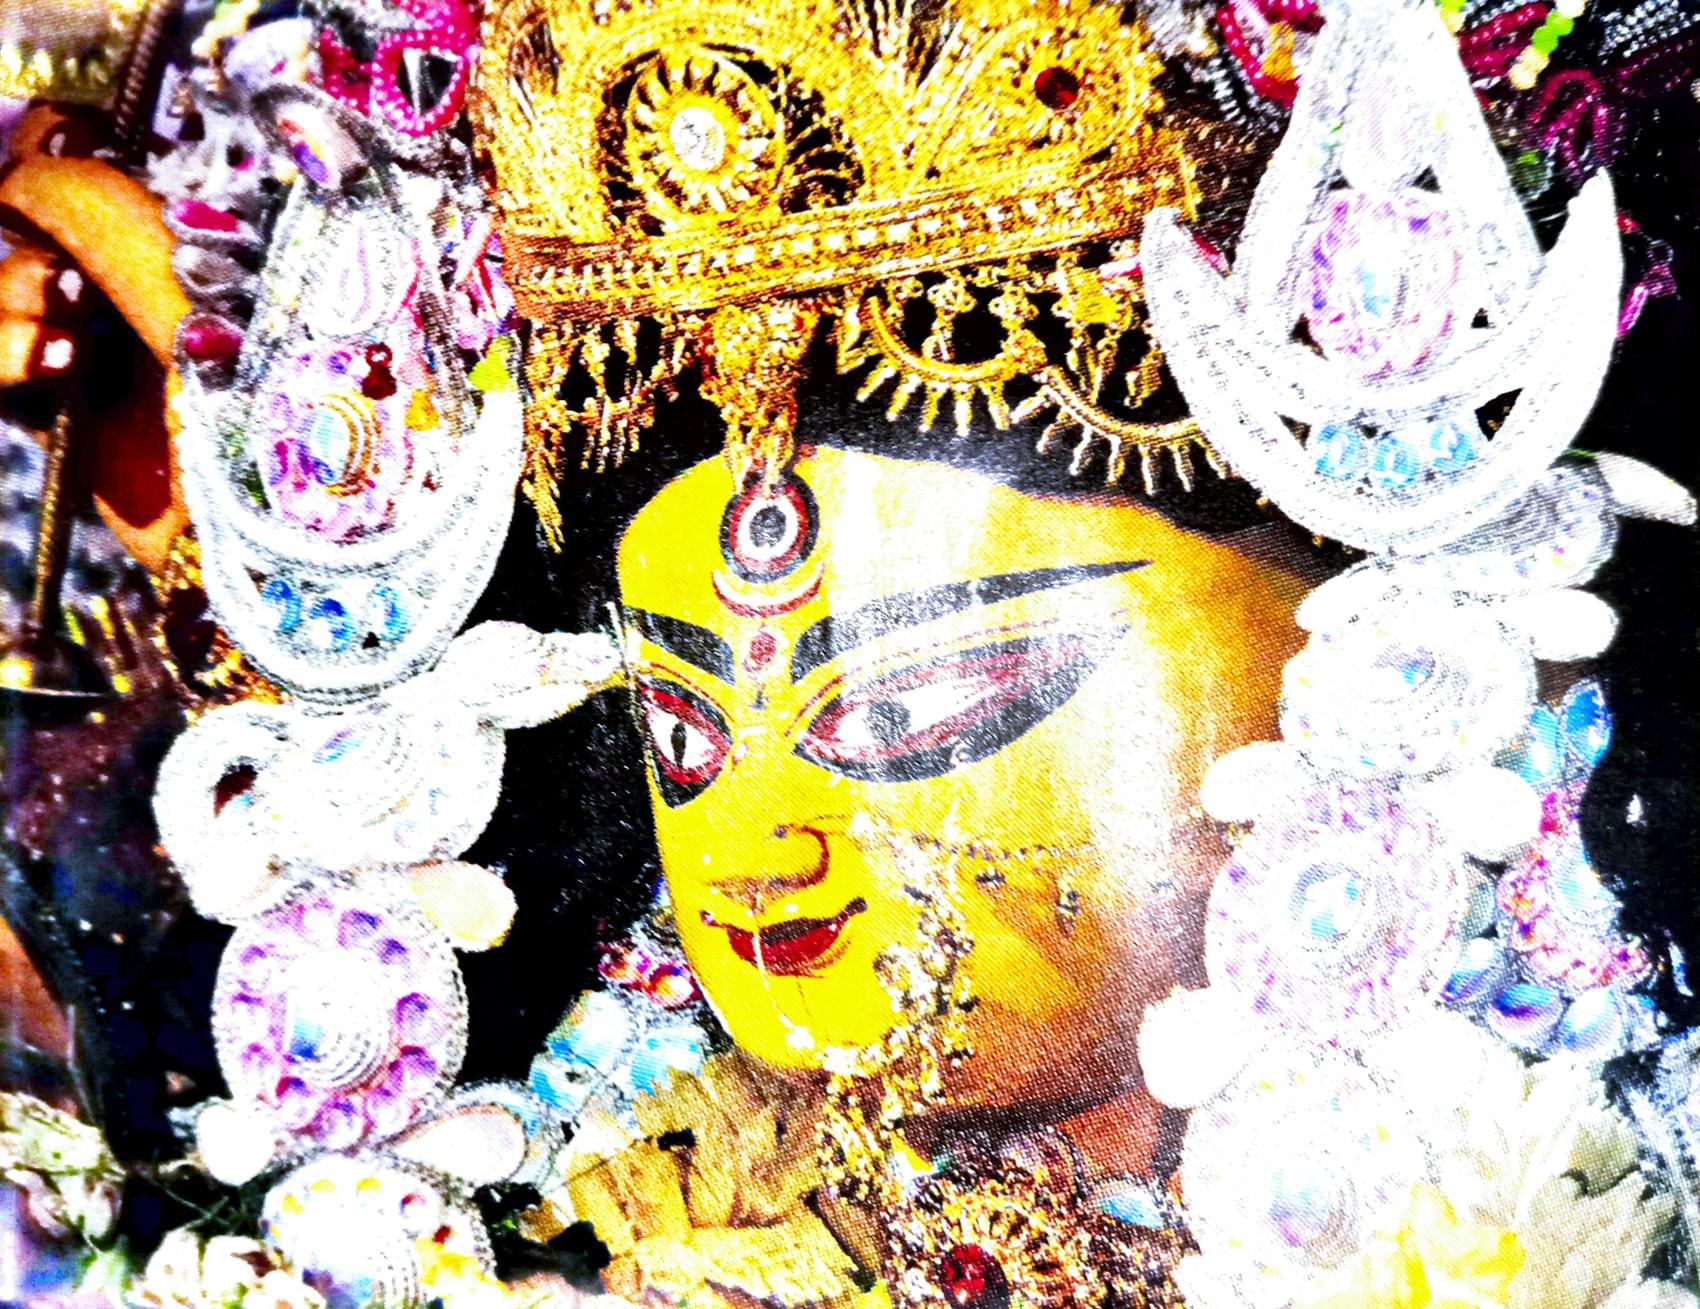 Durga Puja: বলির জন্য কাশী থেকে আনা হয় বাটা চিনির মঠ! খেলাৎচন্দ্র ঘোষের দুর্গাপুজোর ইতিহাস জানেন?